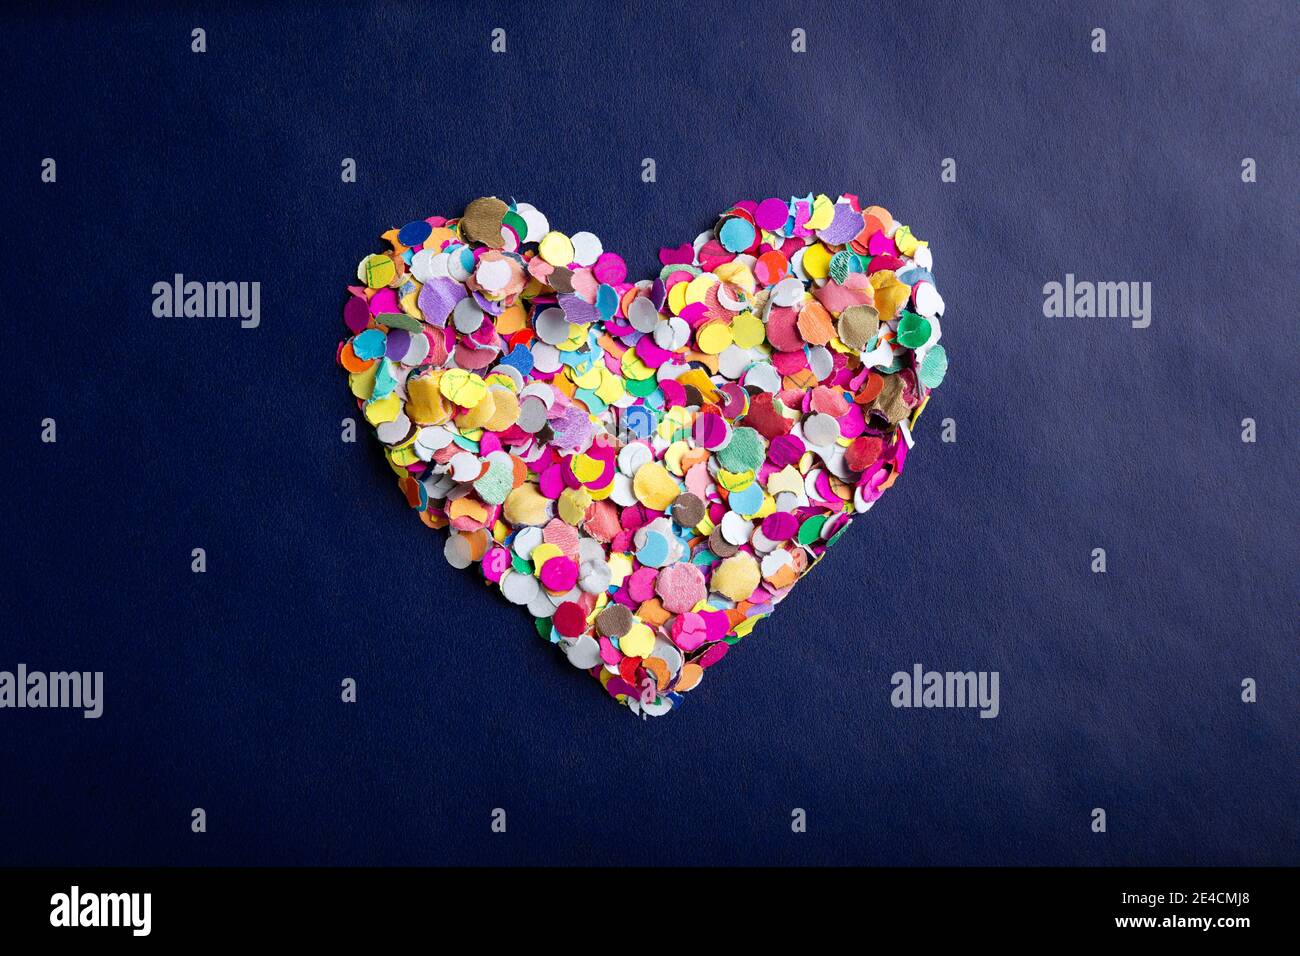 amor concepto imagen de forma de corazón hecho de confeti de colores sobre fondo de textura de papel azul Foto de stock